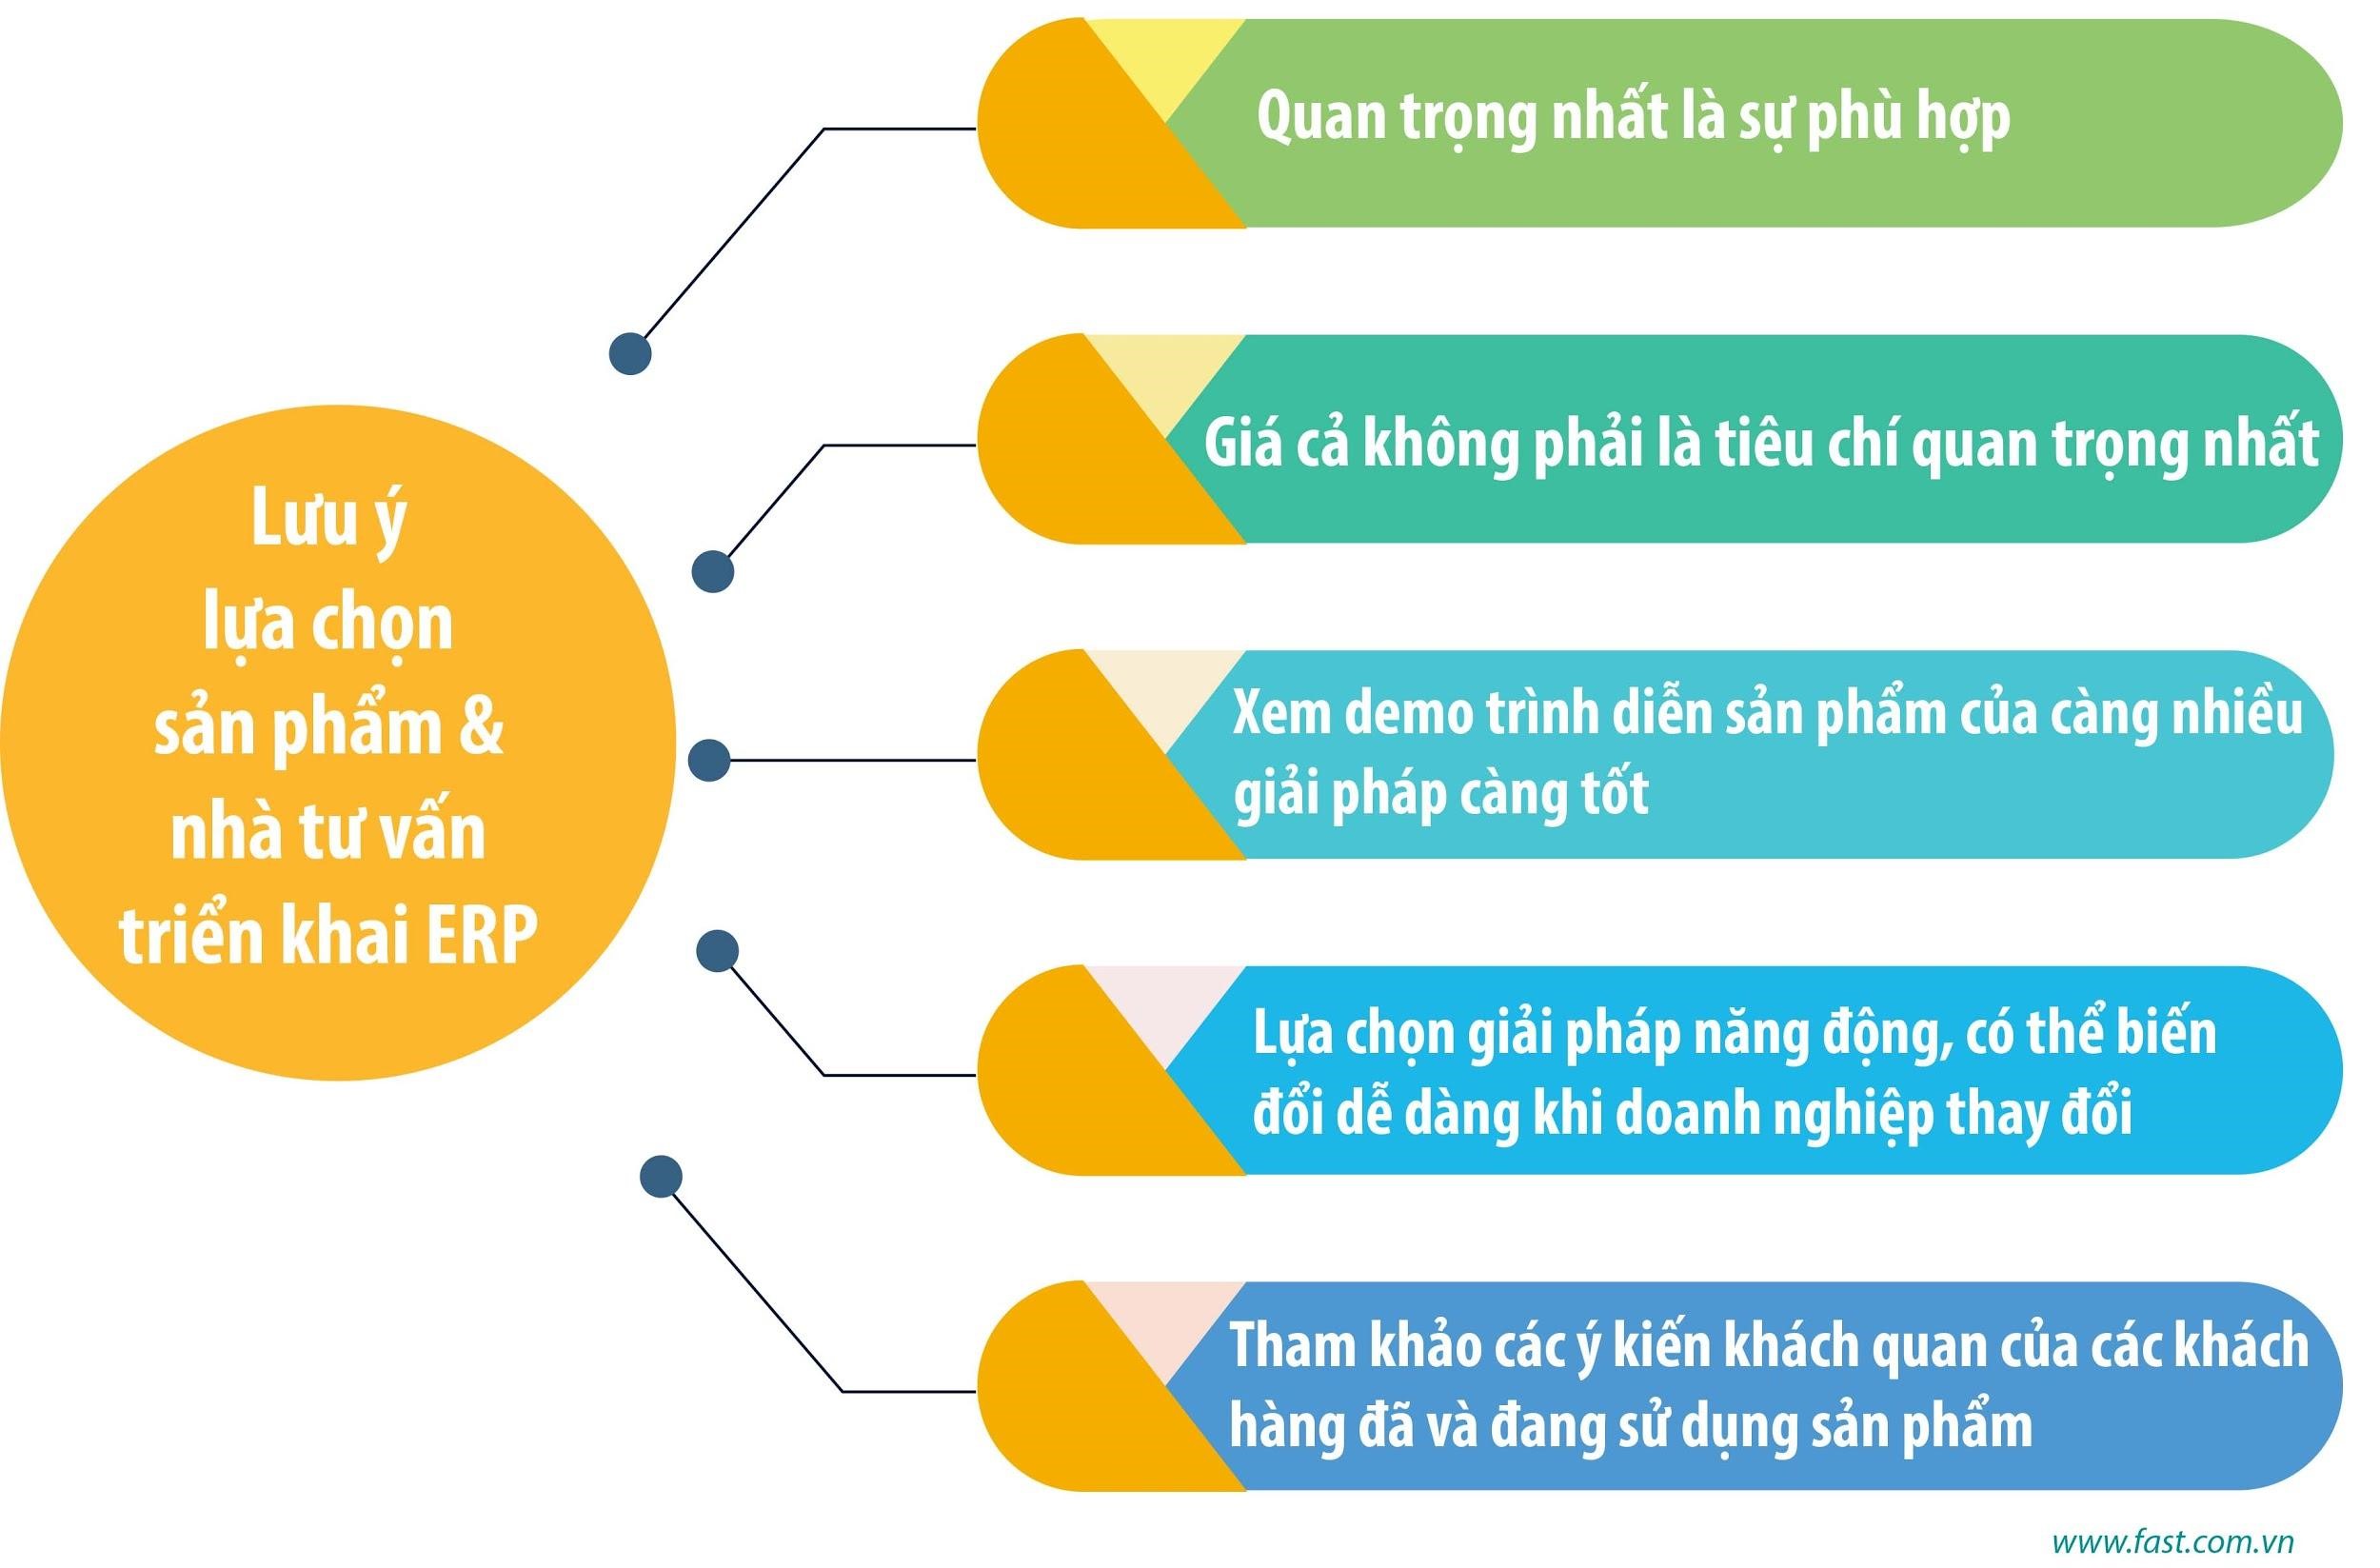 Ứng dụng phần mềm ERP vào doanh nghiệp Việt Nam